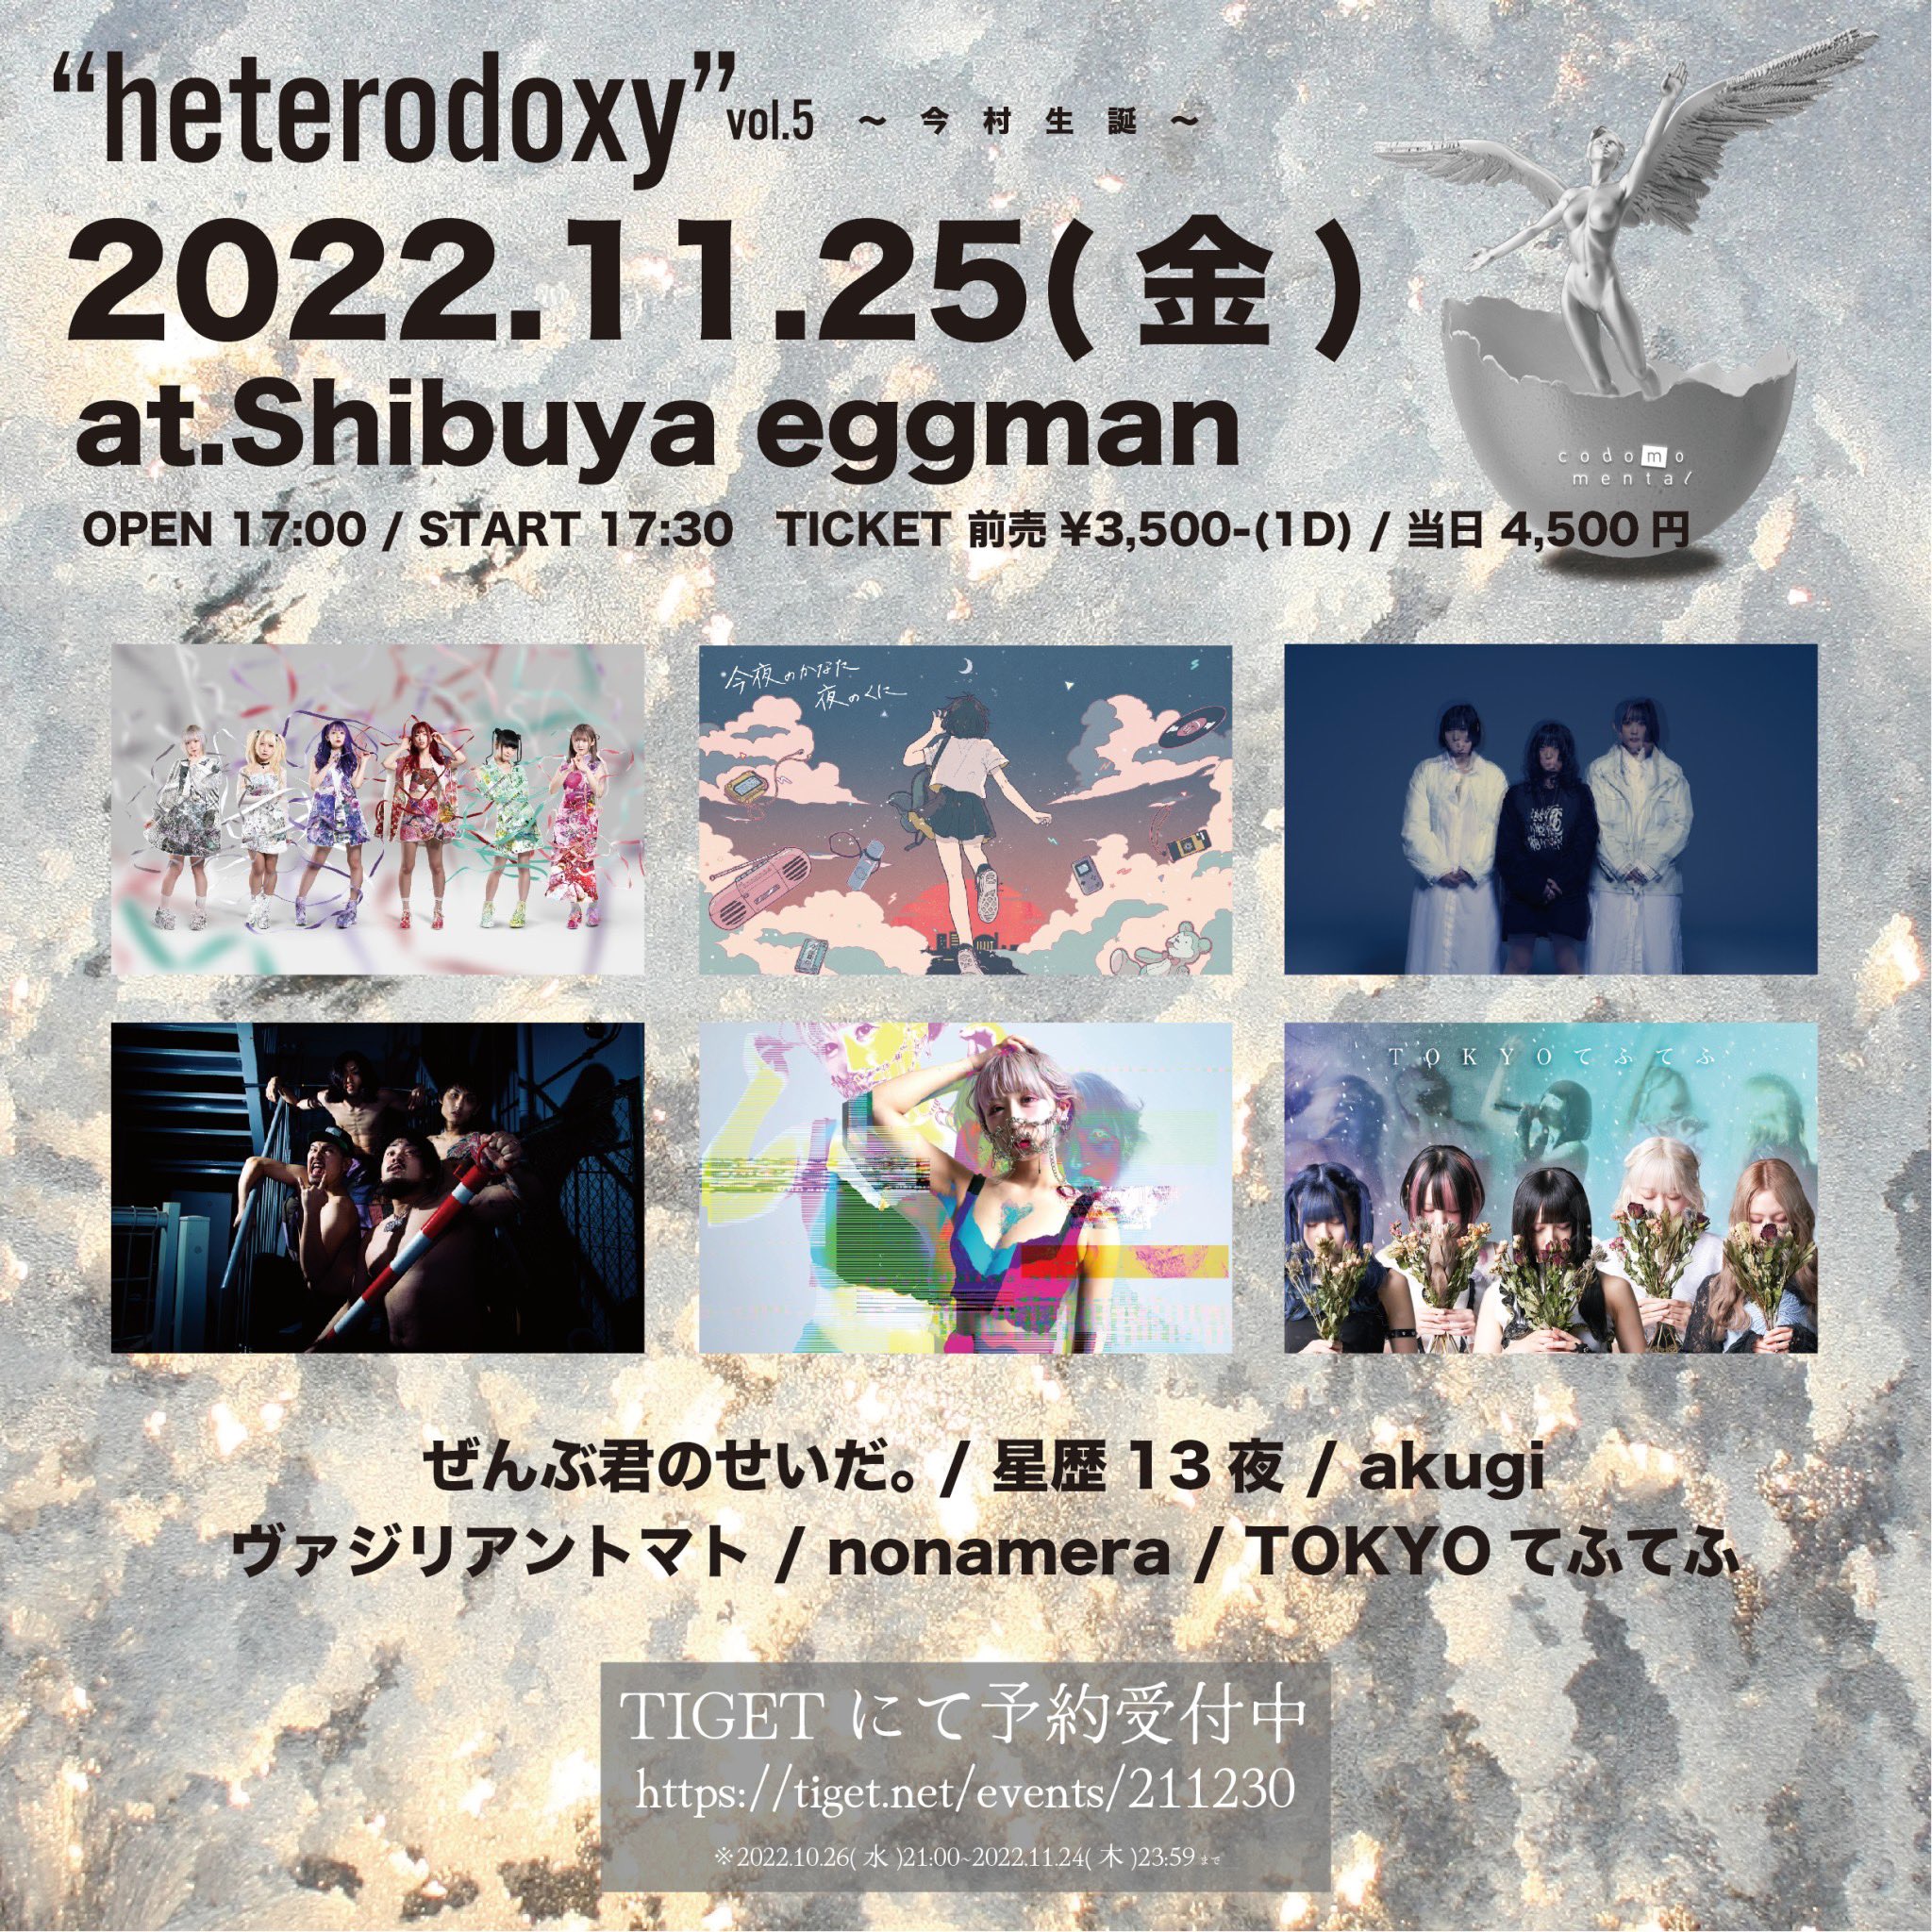 コドモメンタル presents “heterodoxy” vol,5〜今村生誕〜